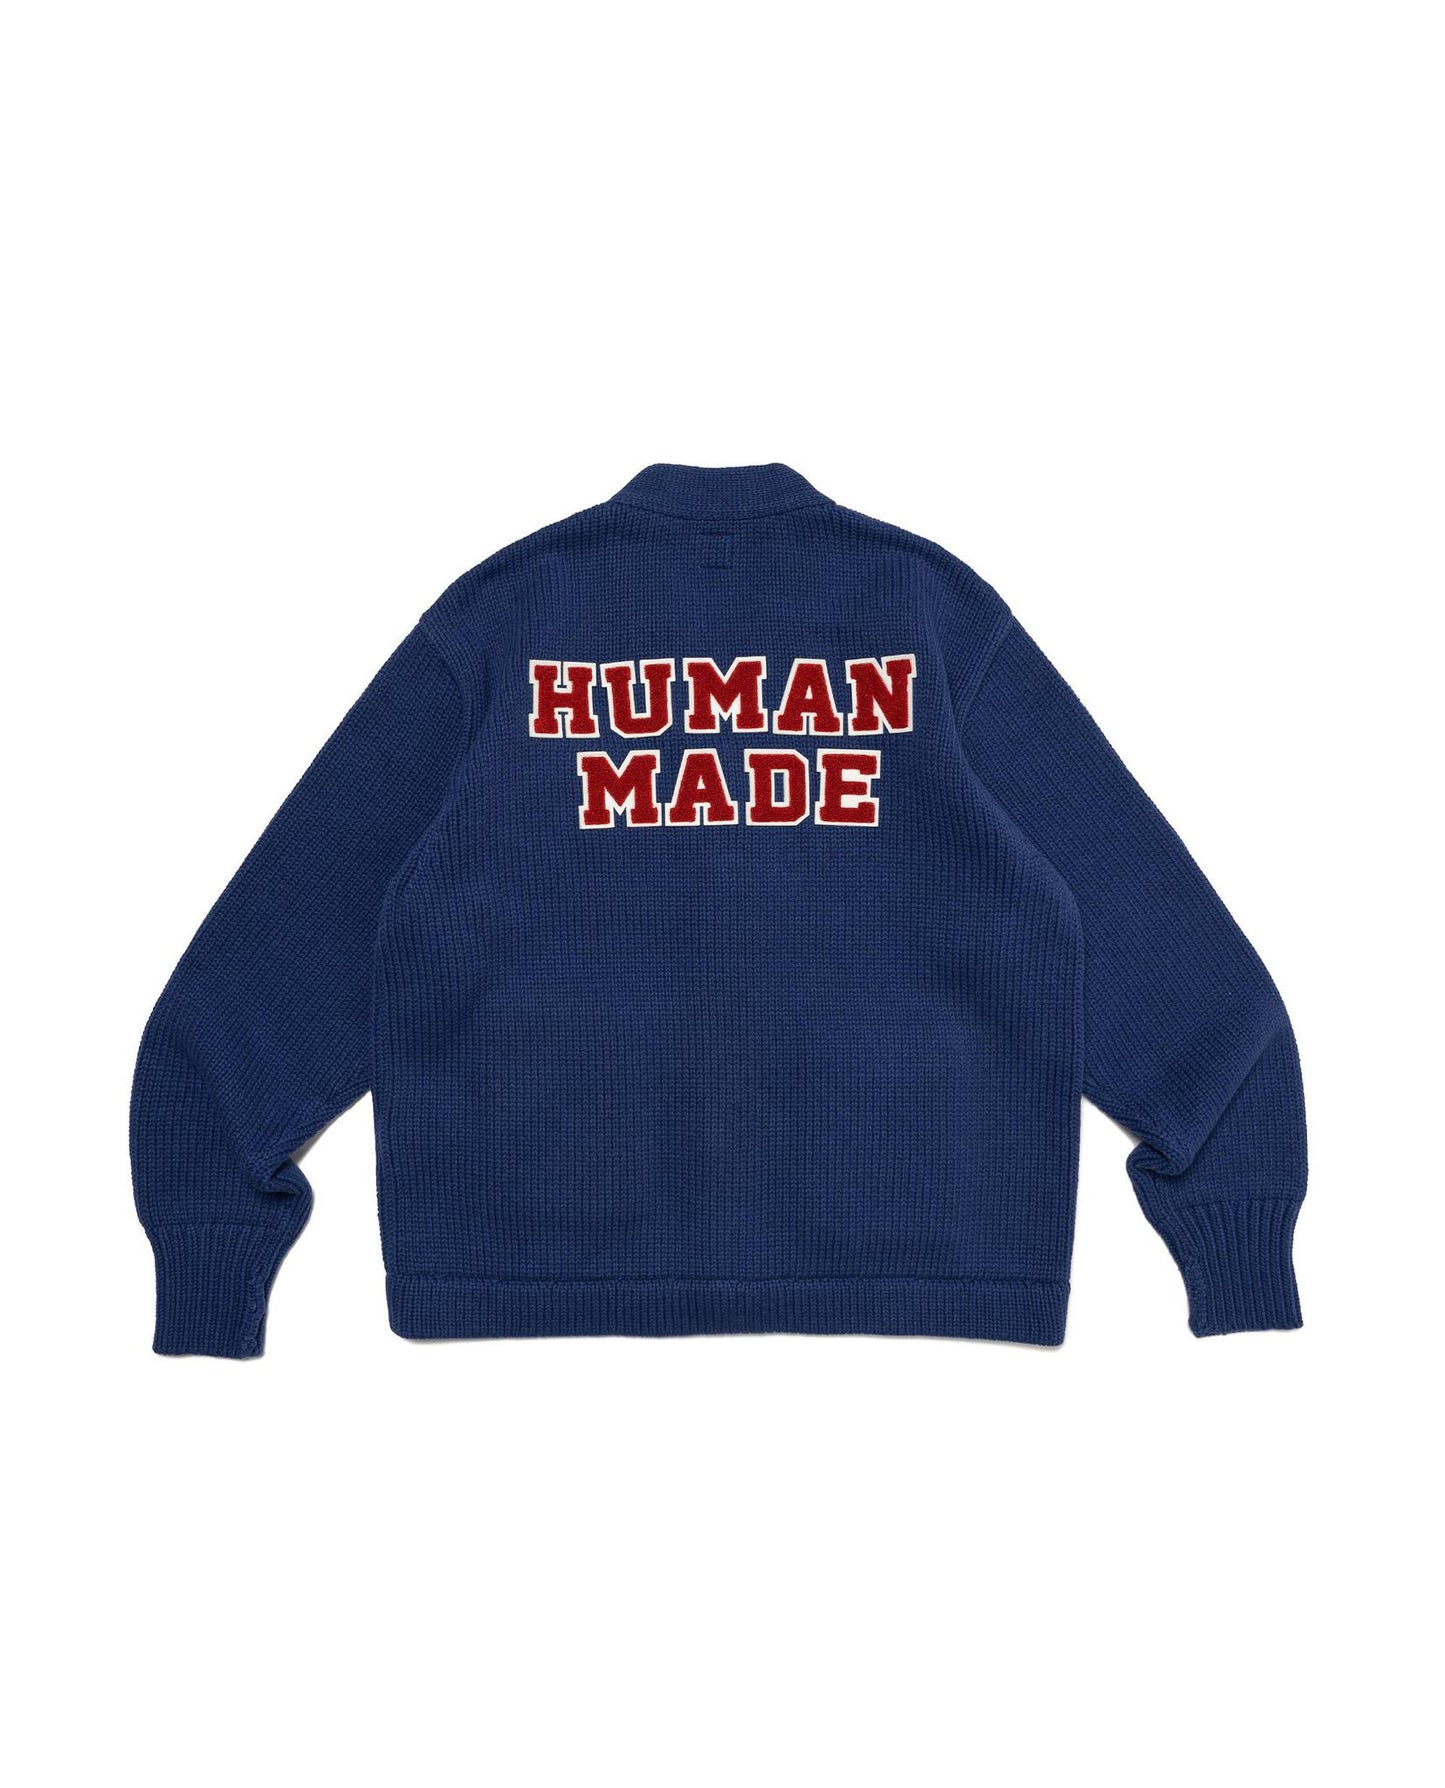 Human Made Low Gauge Knit Cardigan | STASHED